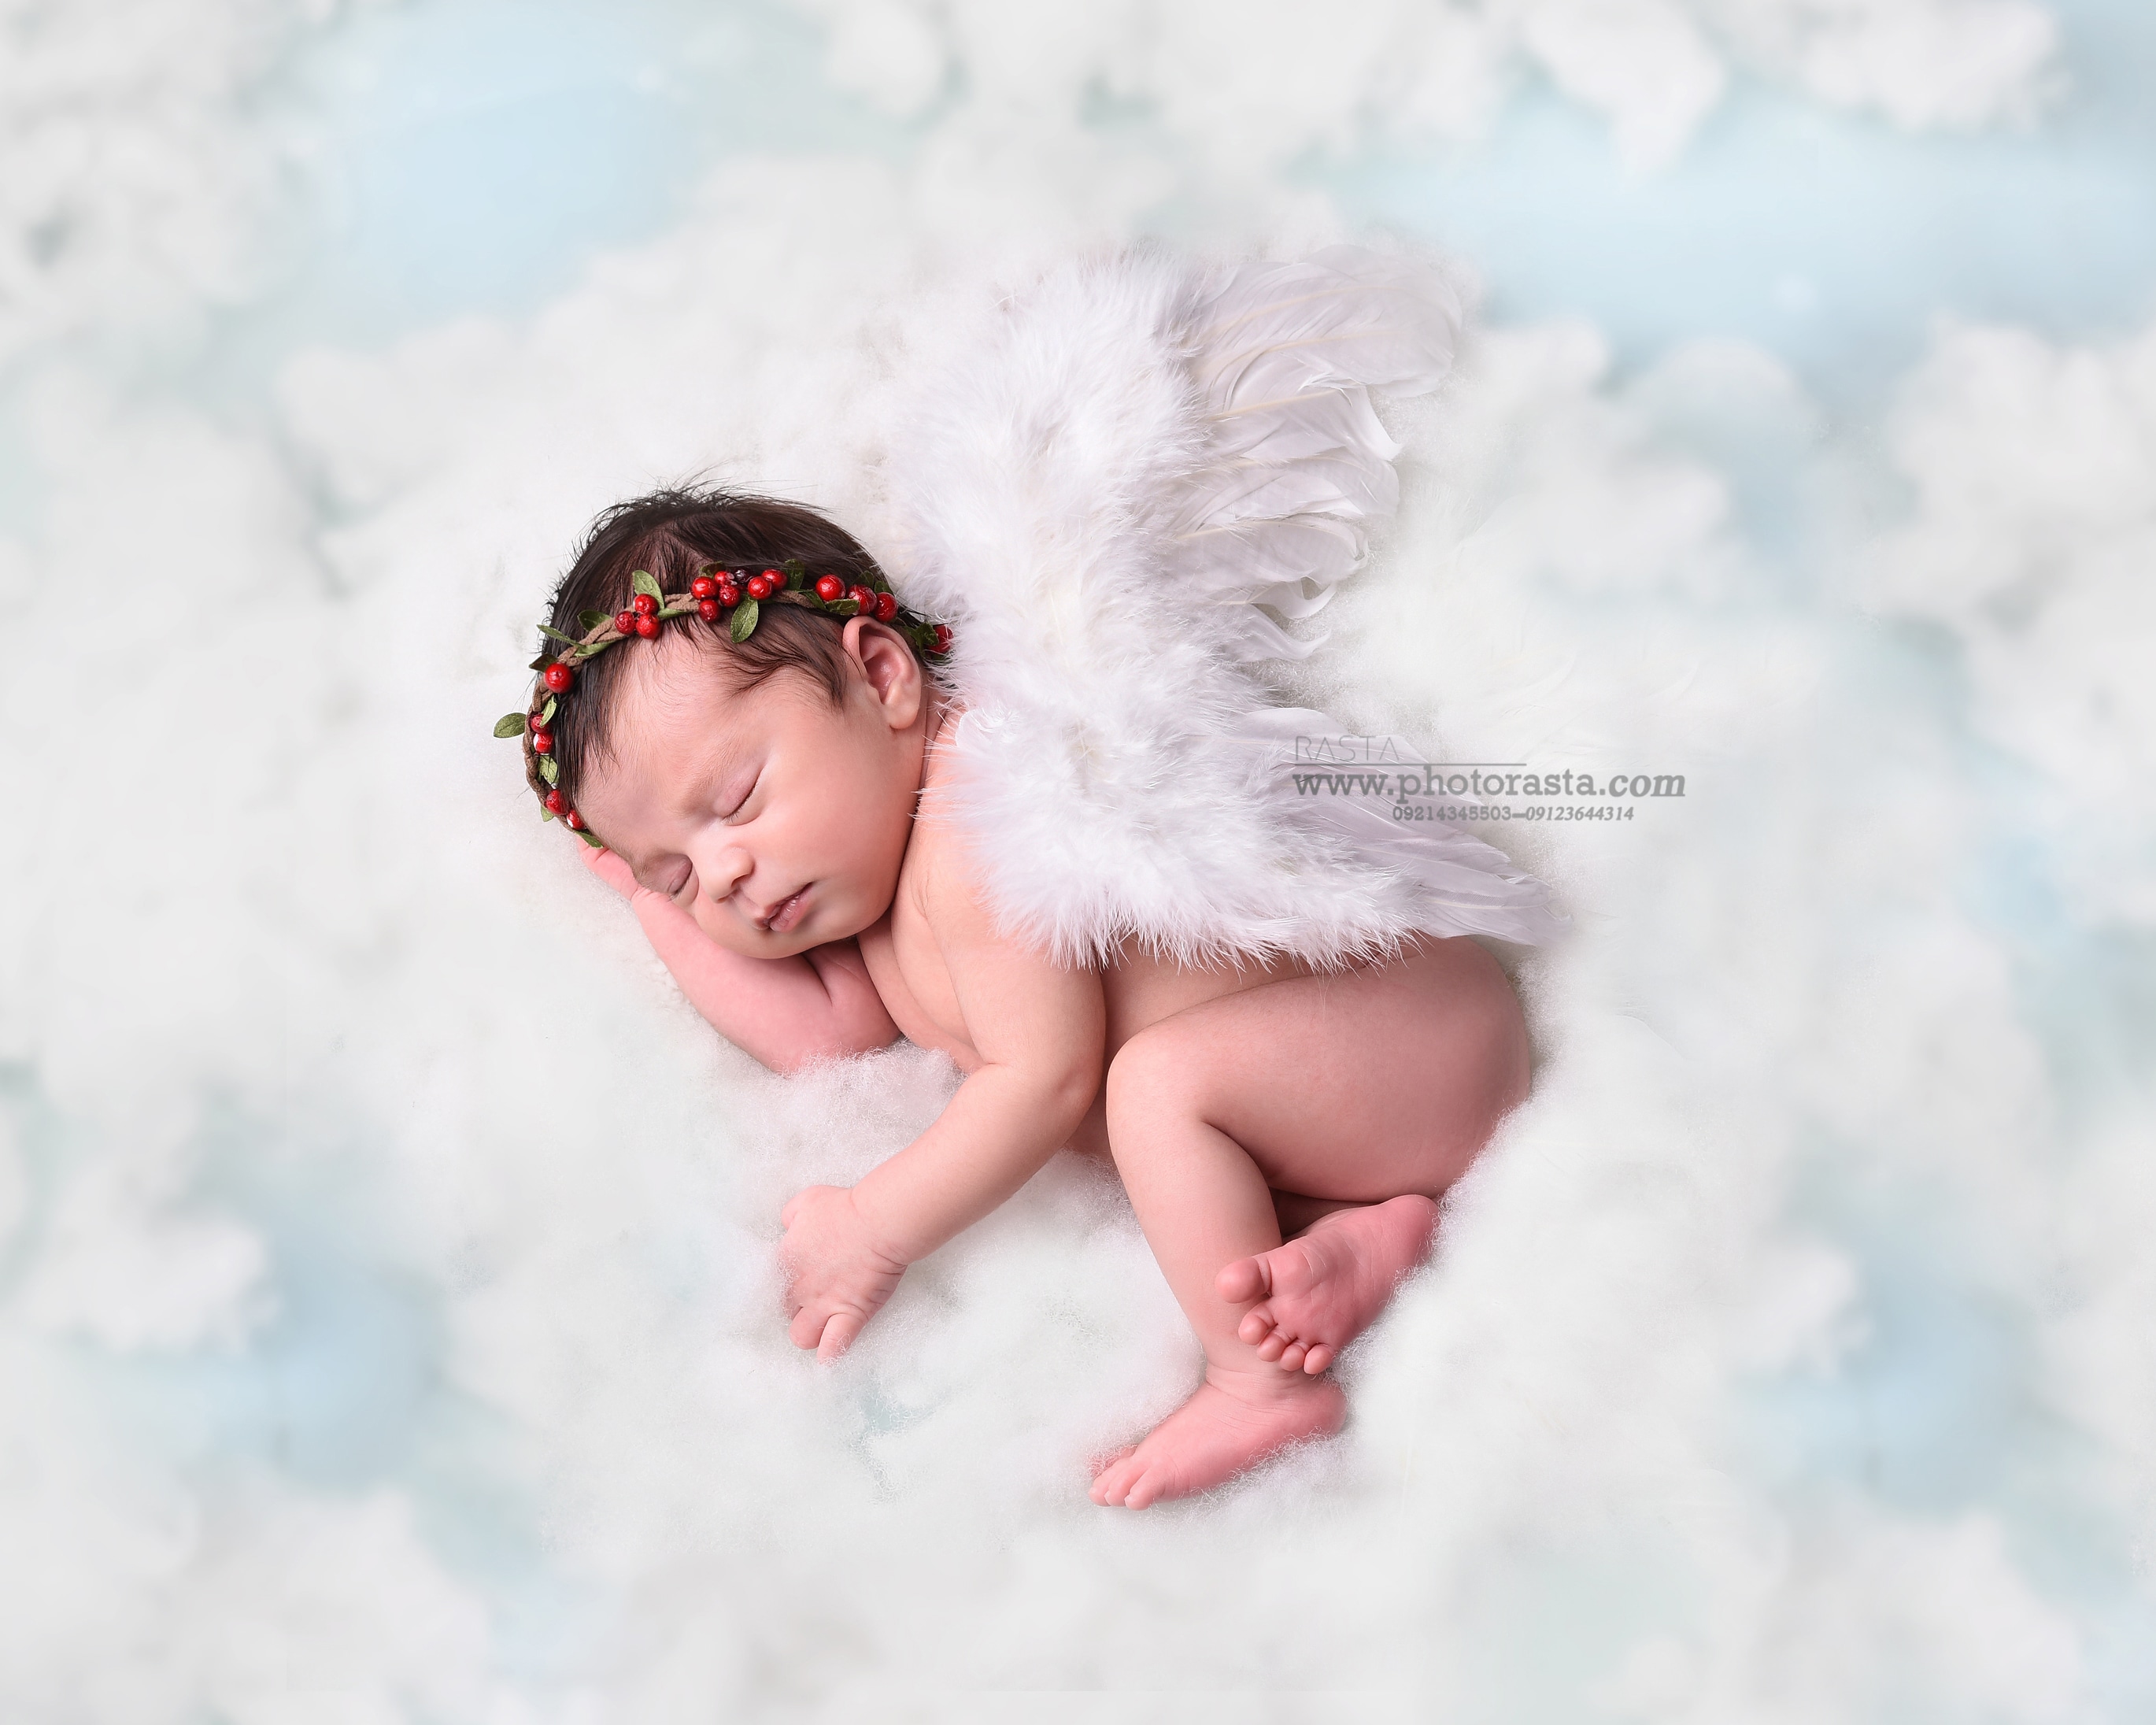 نمونه کار نوزاد با تم فرشته